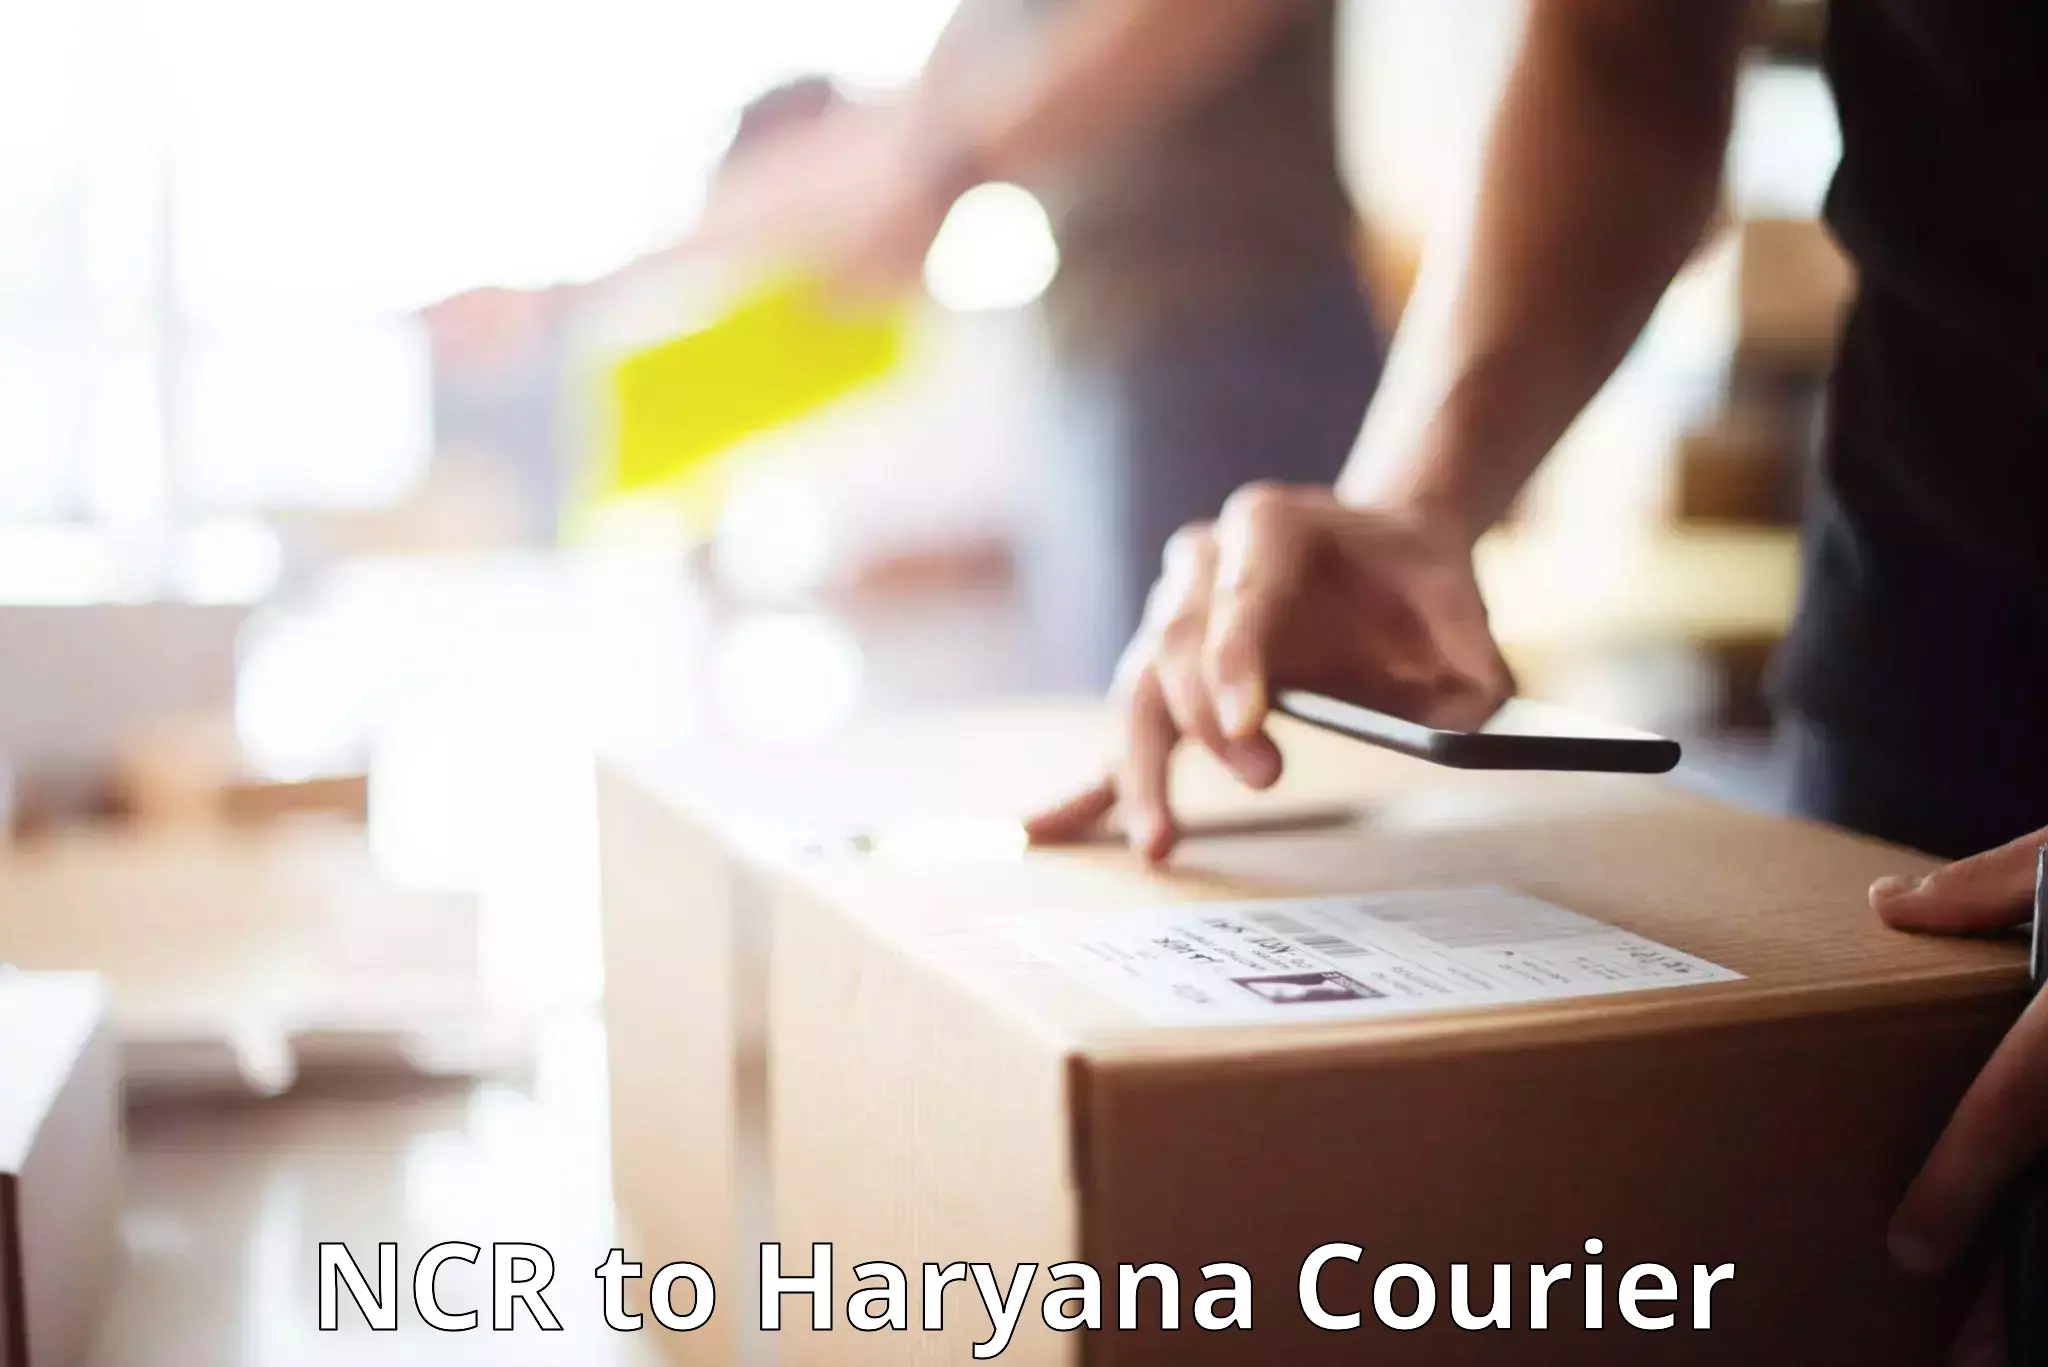 Luggage transfer service NCR to Haryana